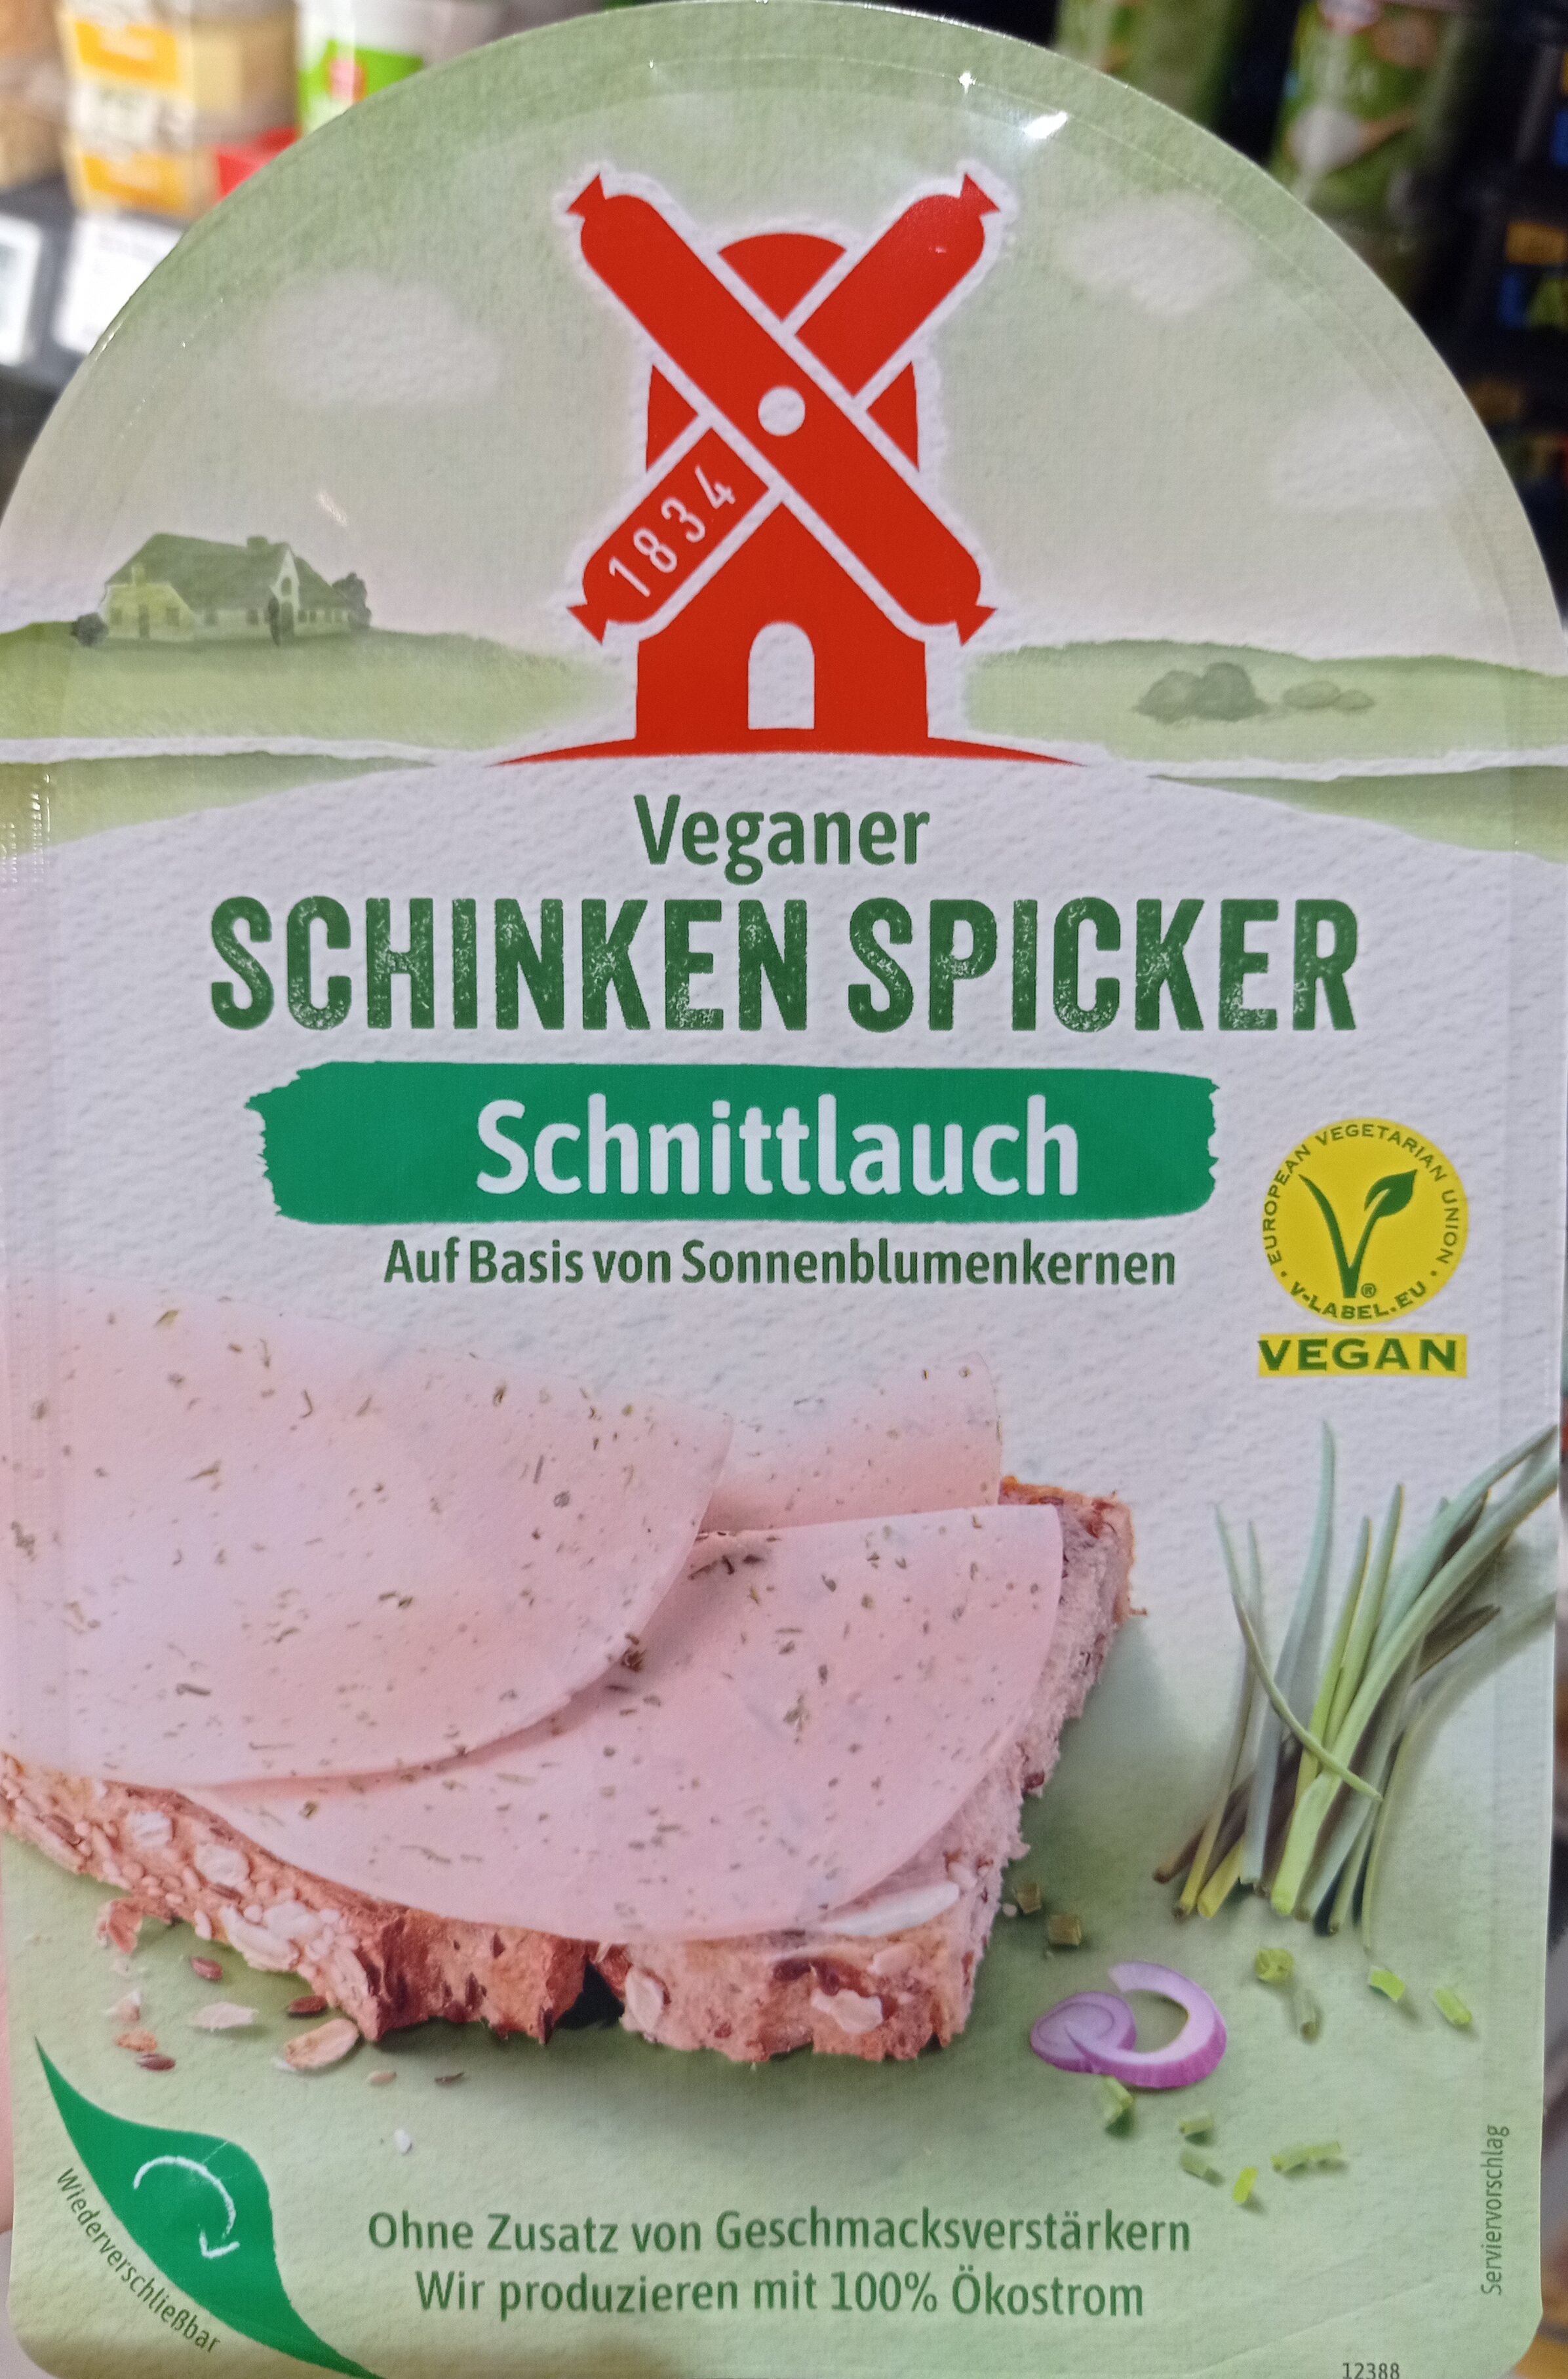 Veganer Schinkenspicker mit Schnittlauch - Product - de